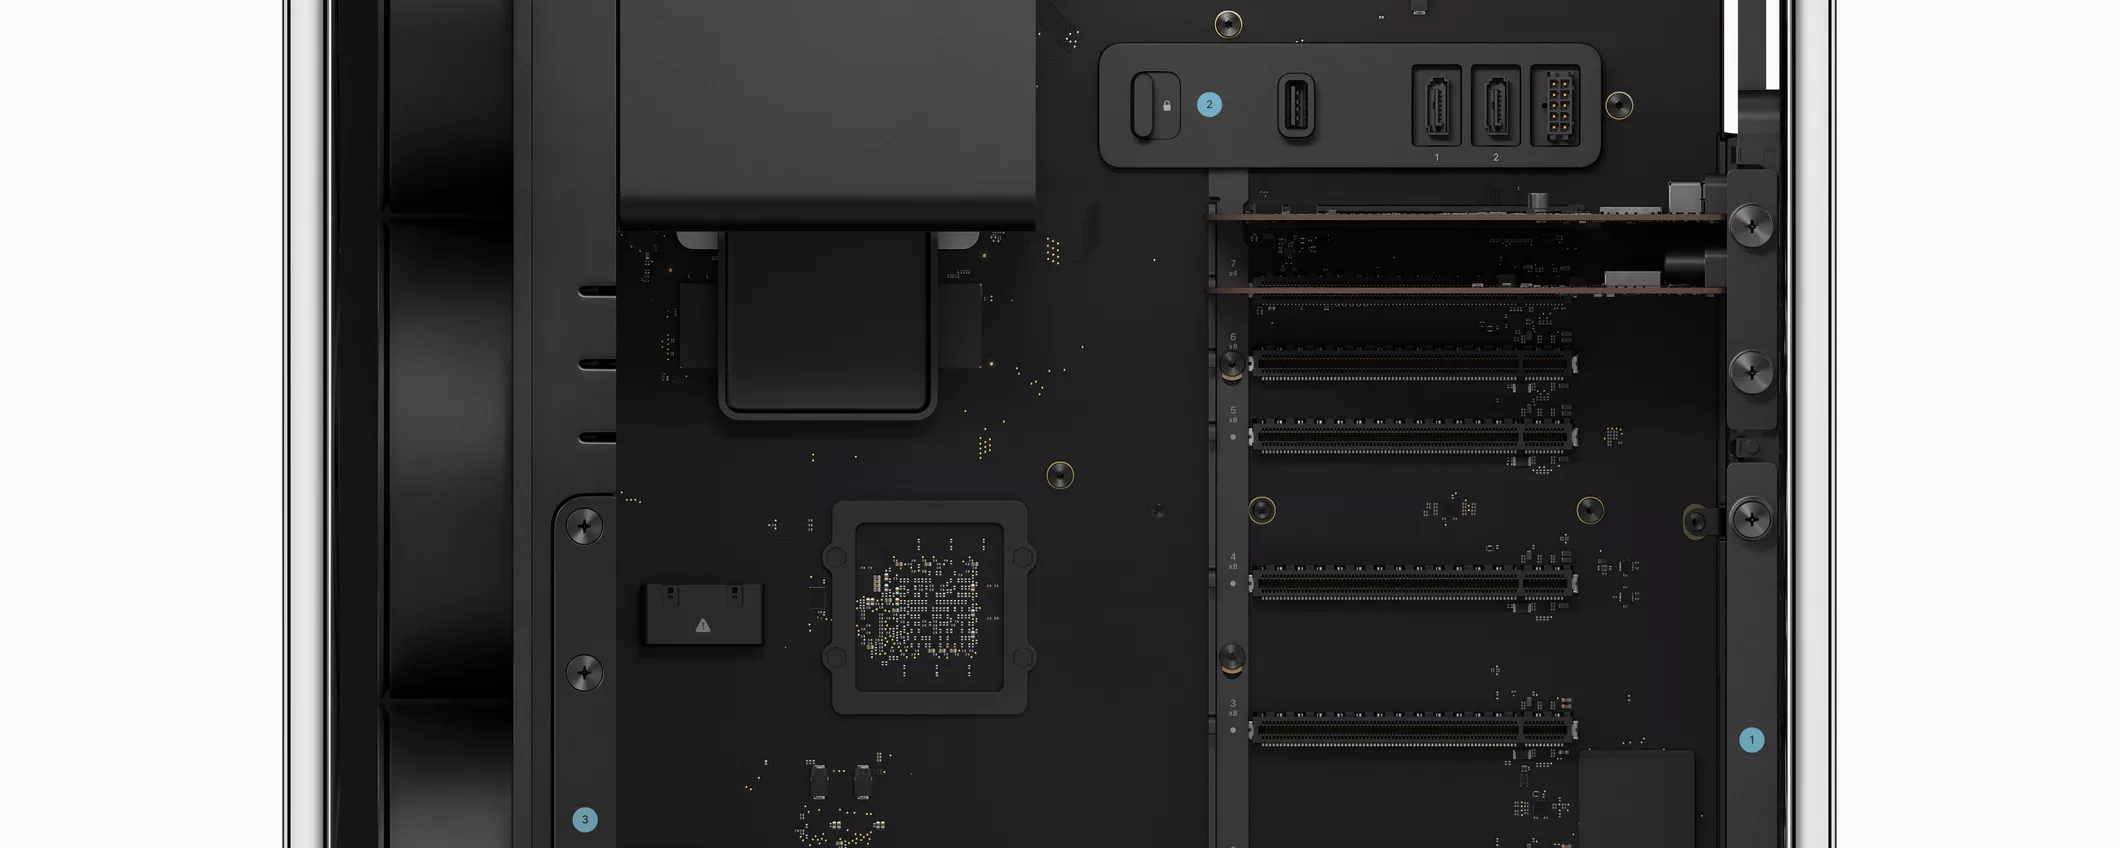 Il nuovo Mac Pro con Apple Silicon: un aggiornamento atteso per i professionisti